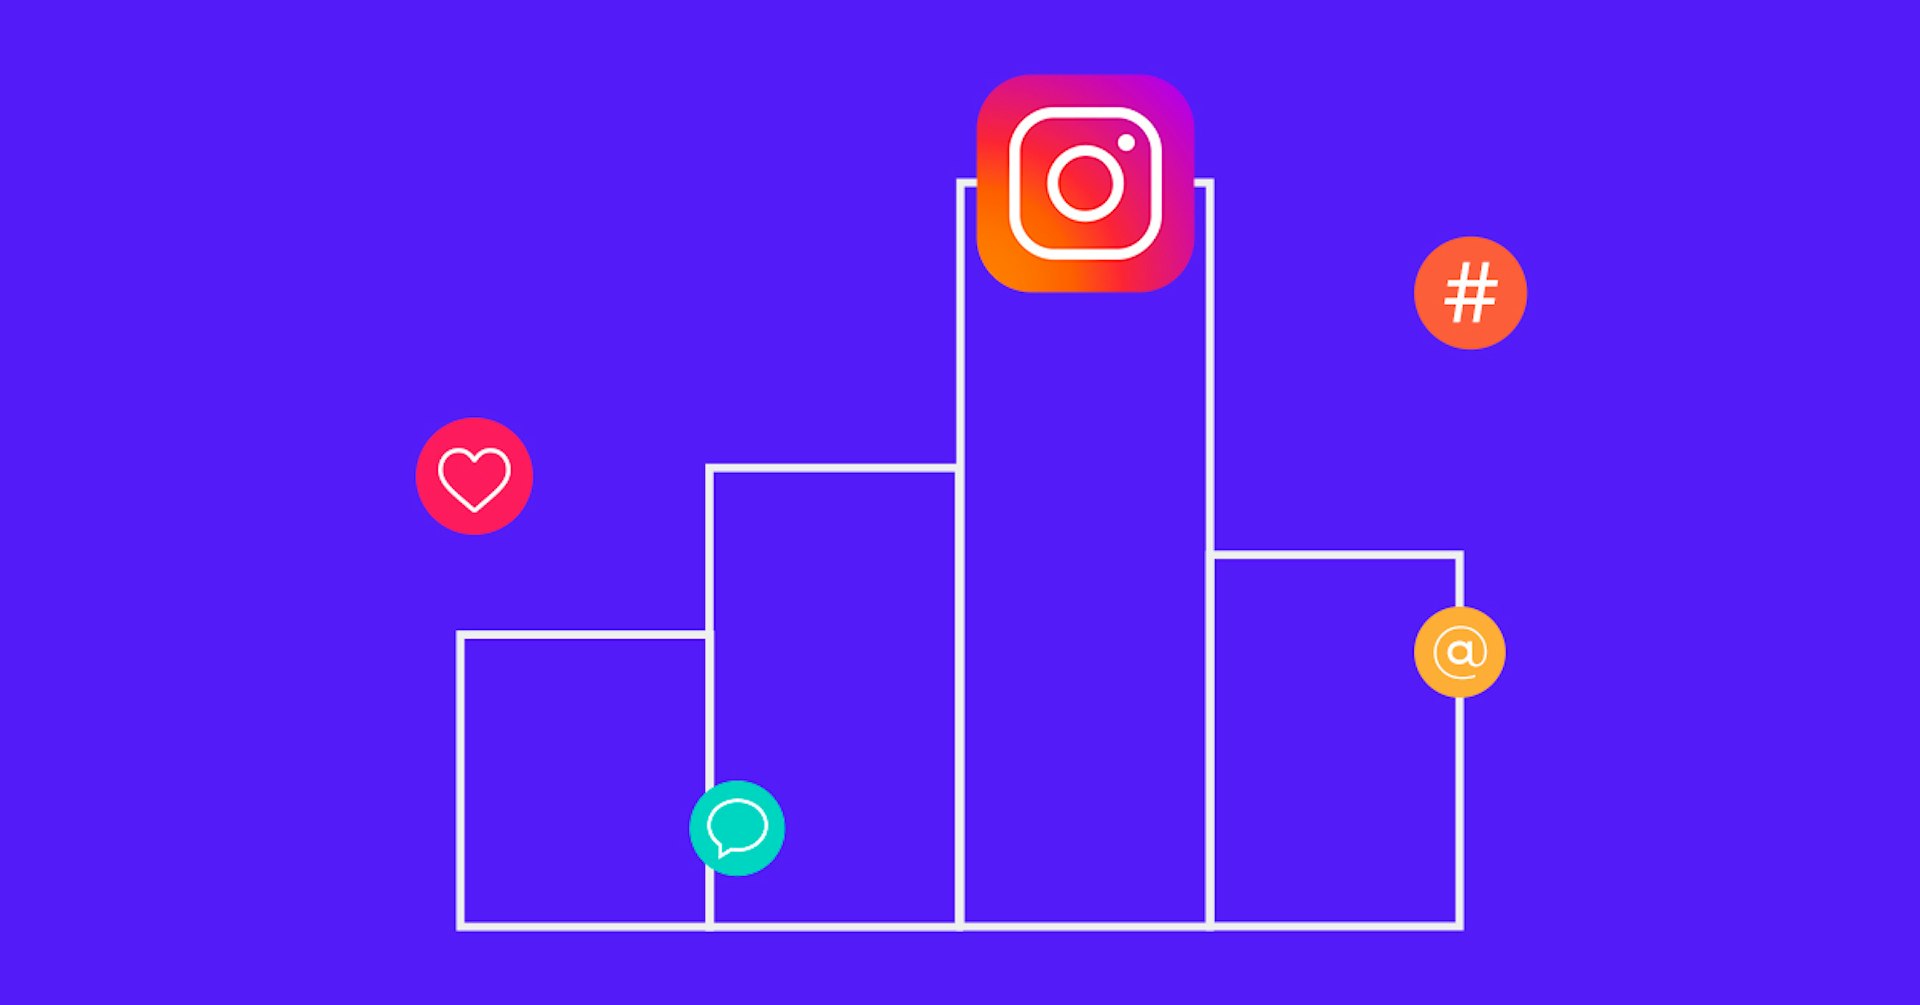 ¿Qué son las impresiones en Instagram? Descubre si tu contenido está cautivando a tus seguidores